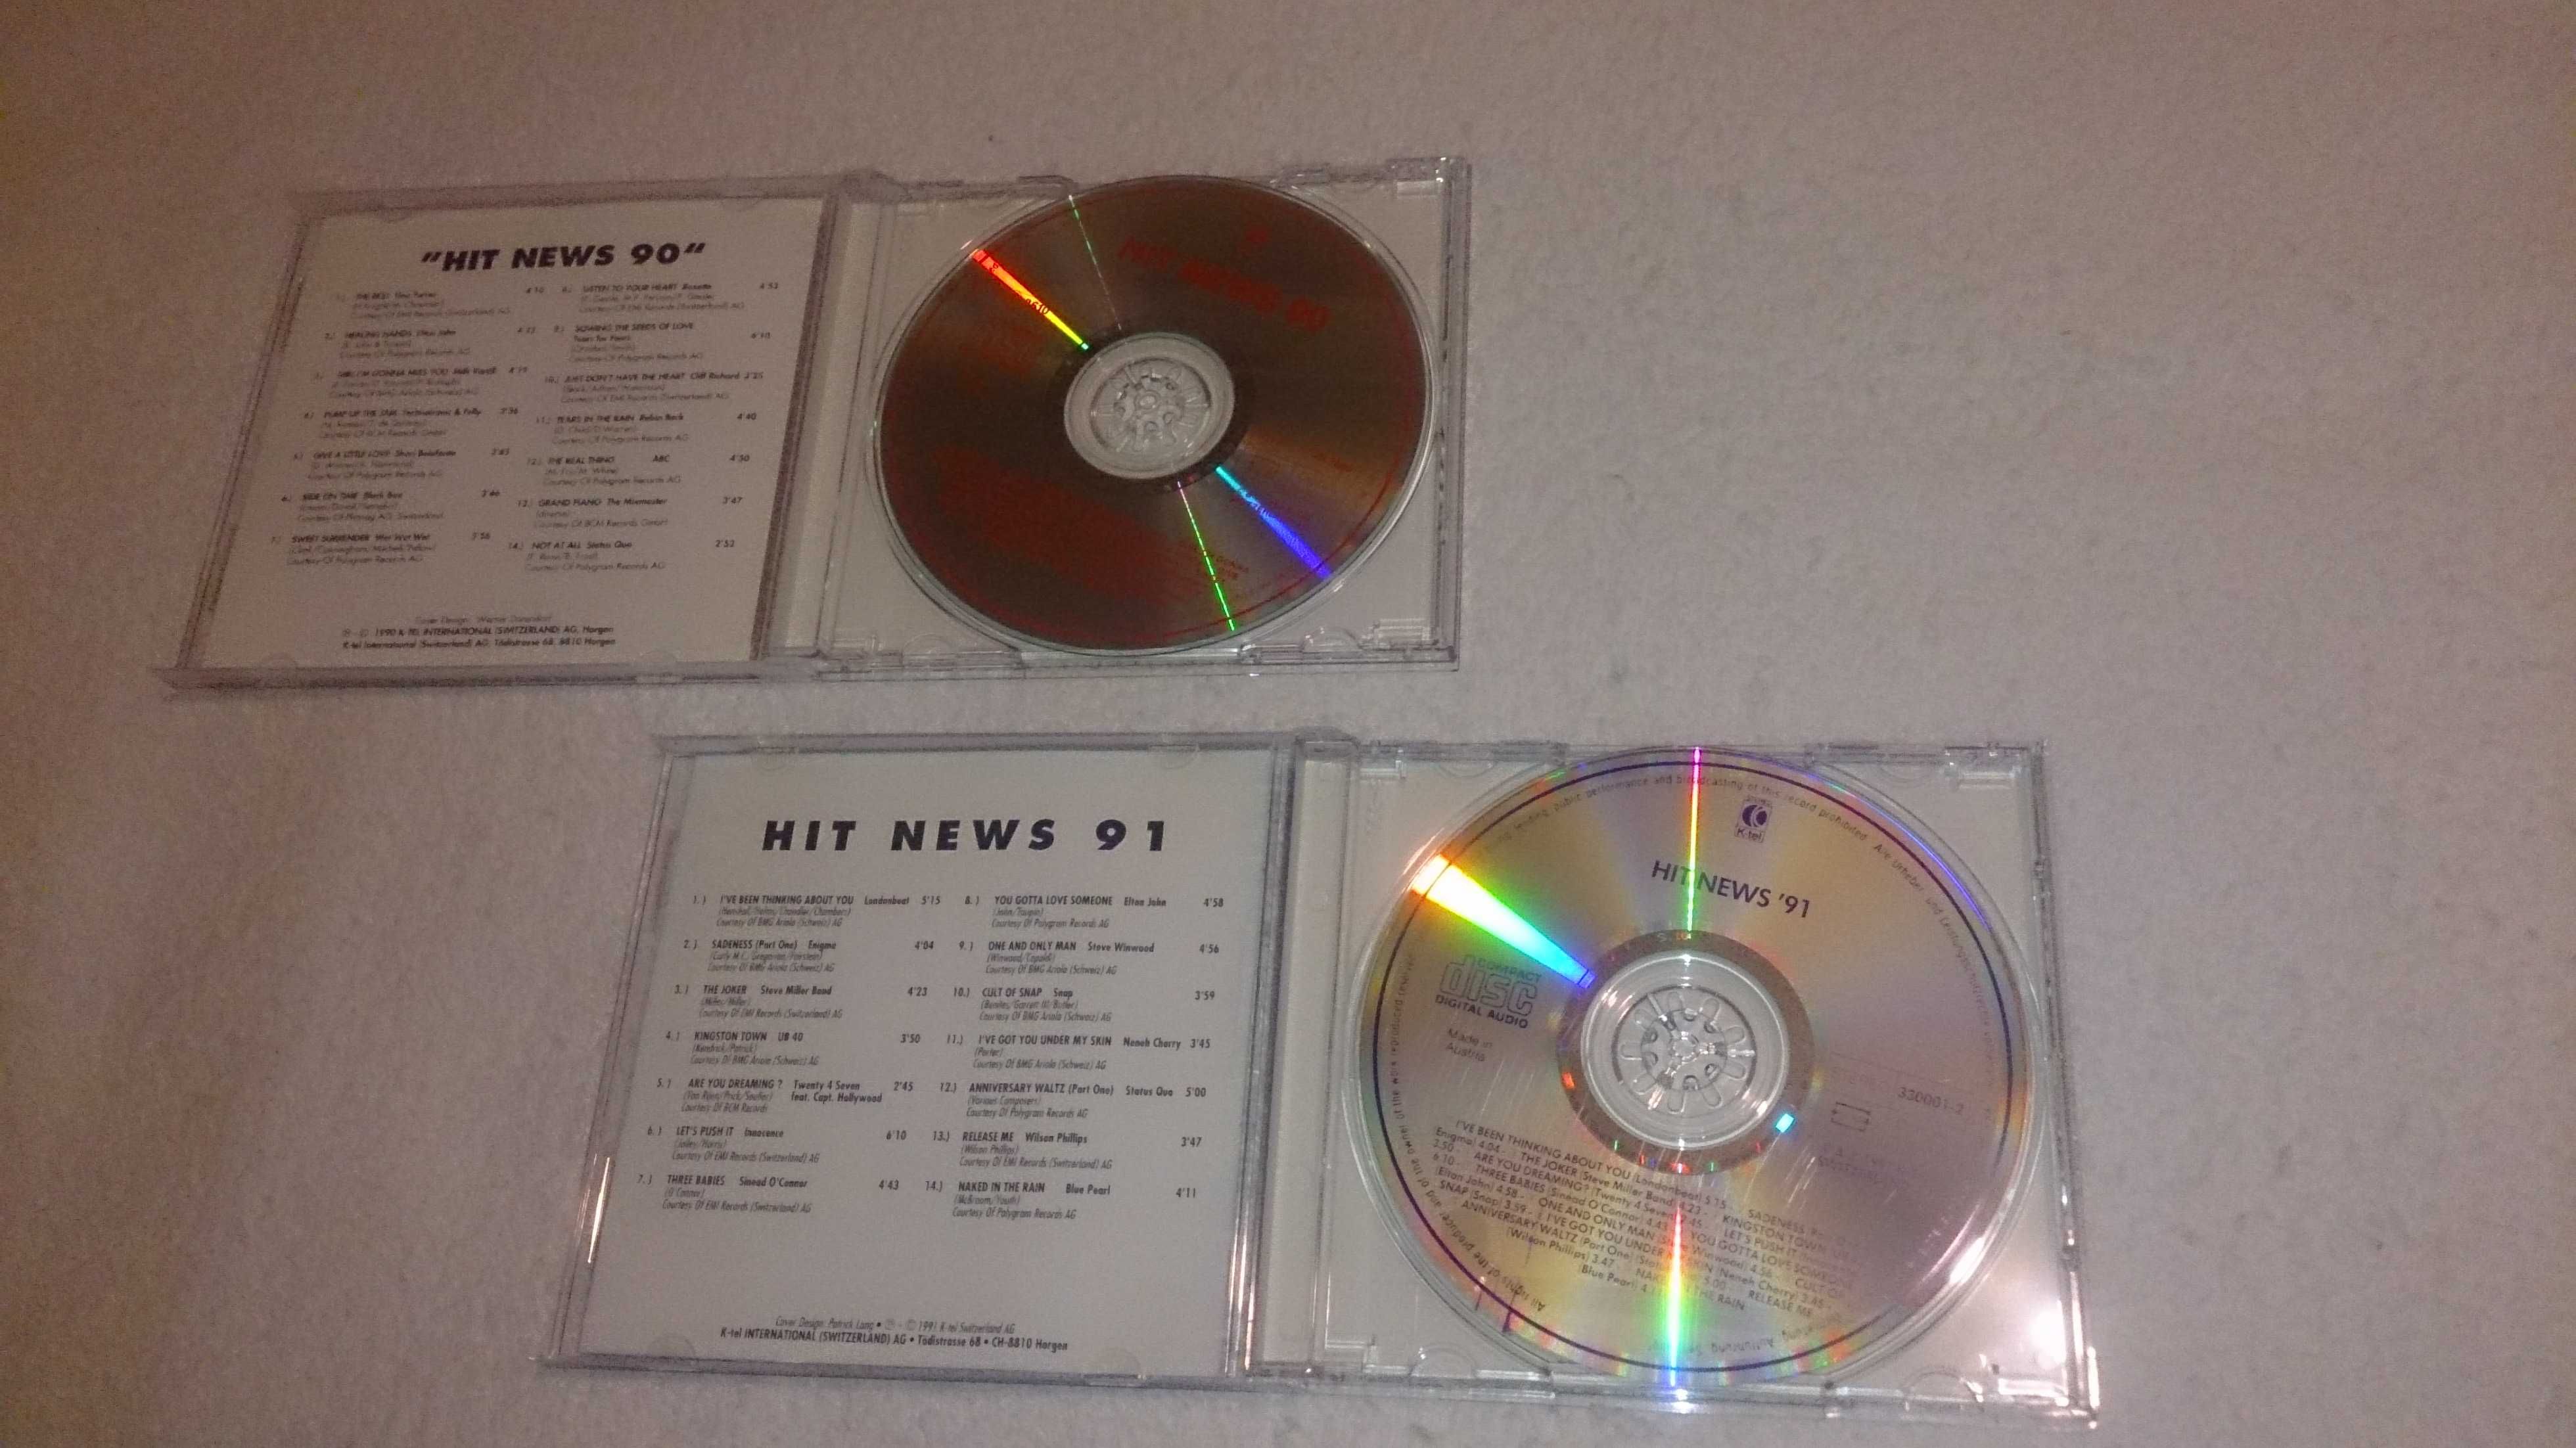 hitnews 90 e 91 (2 cds) raros